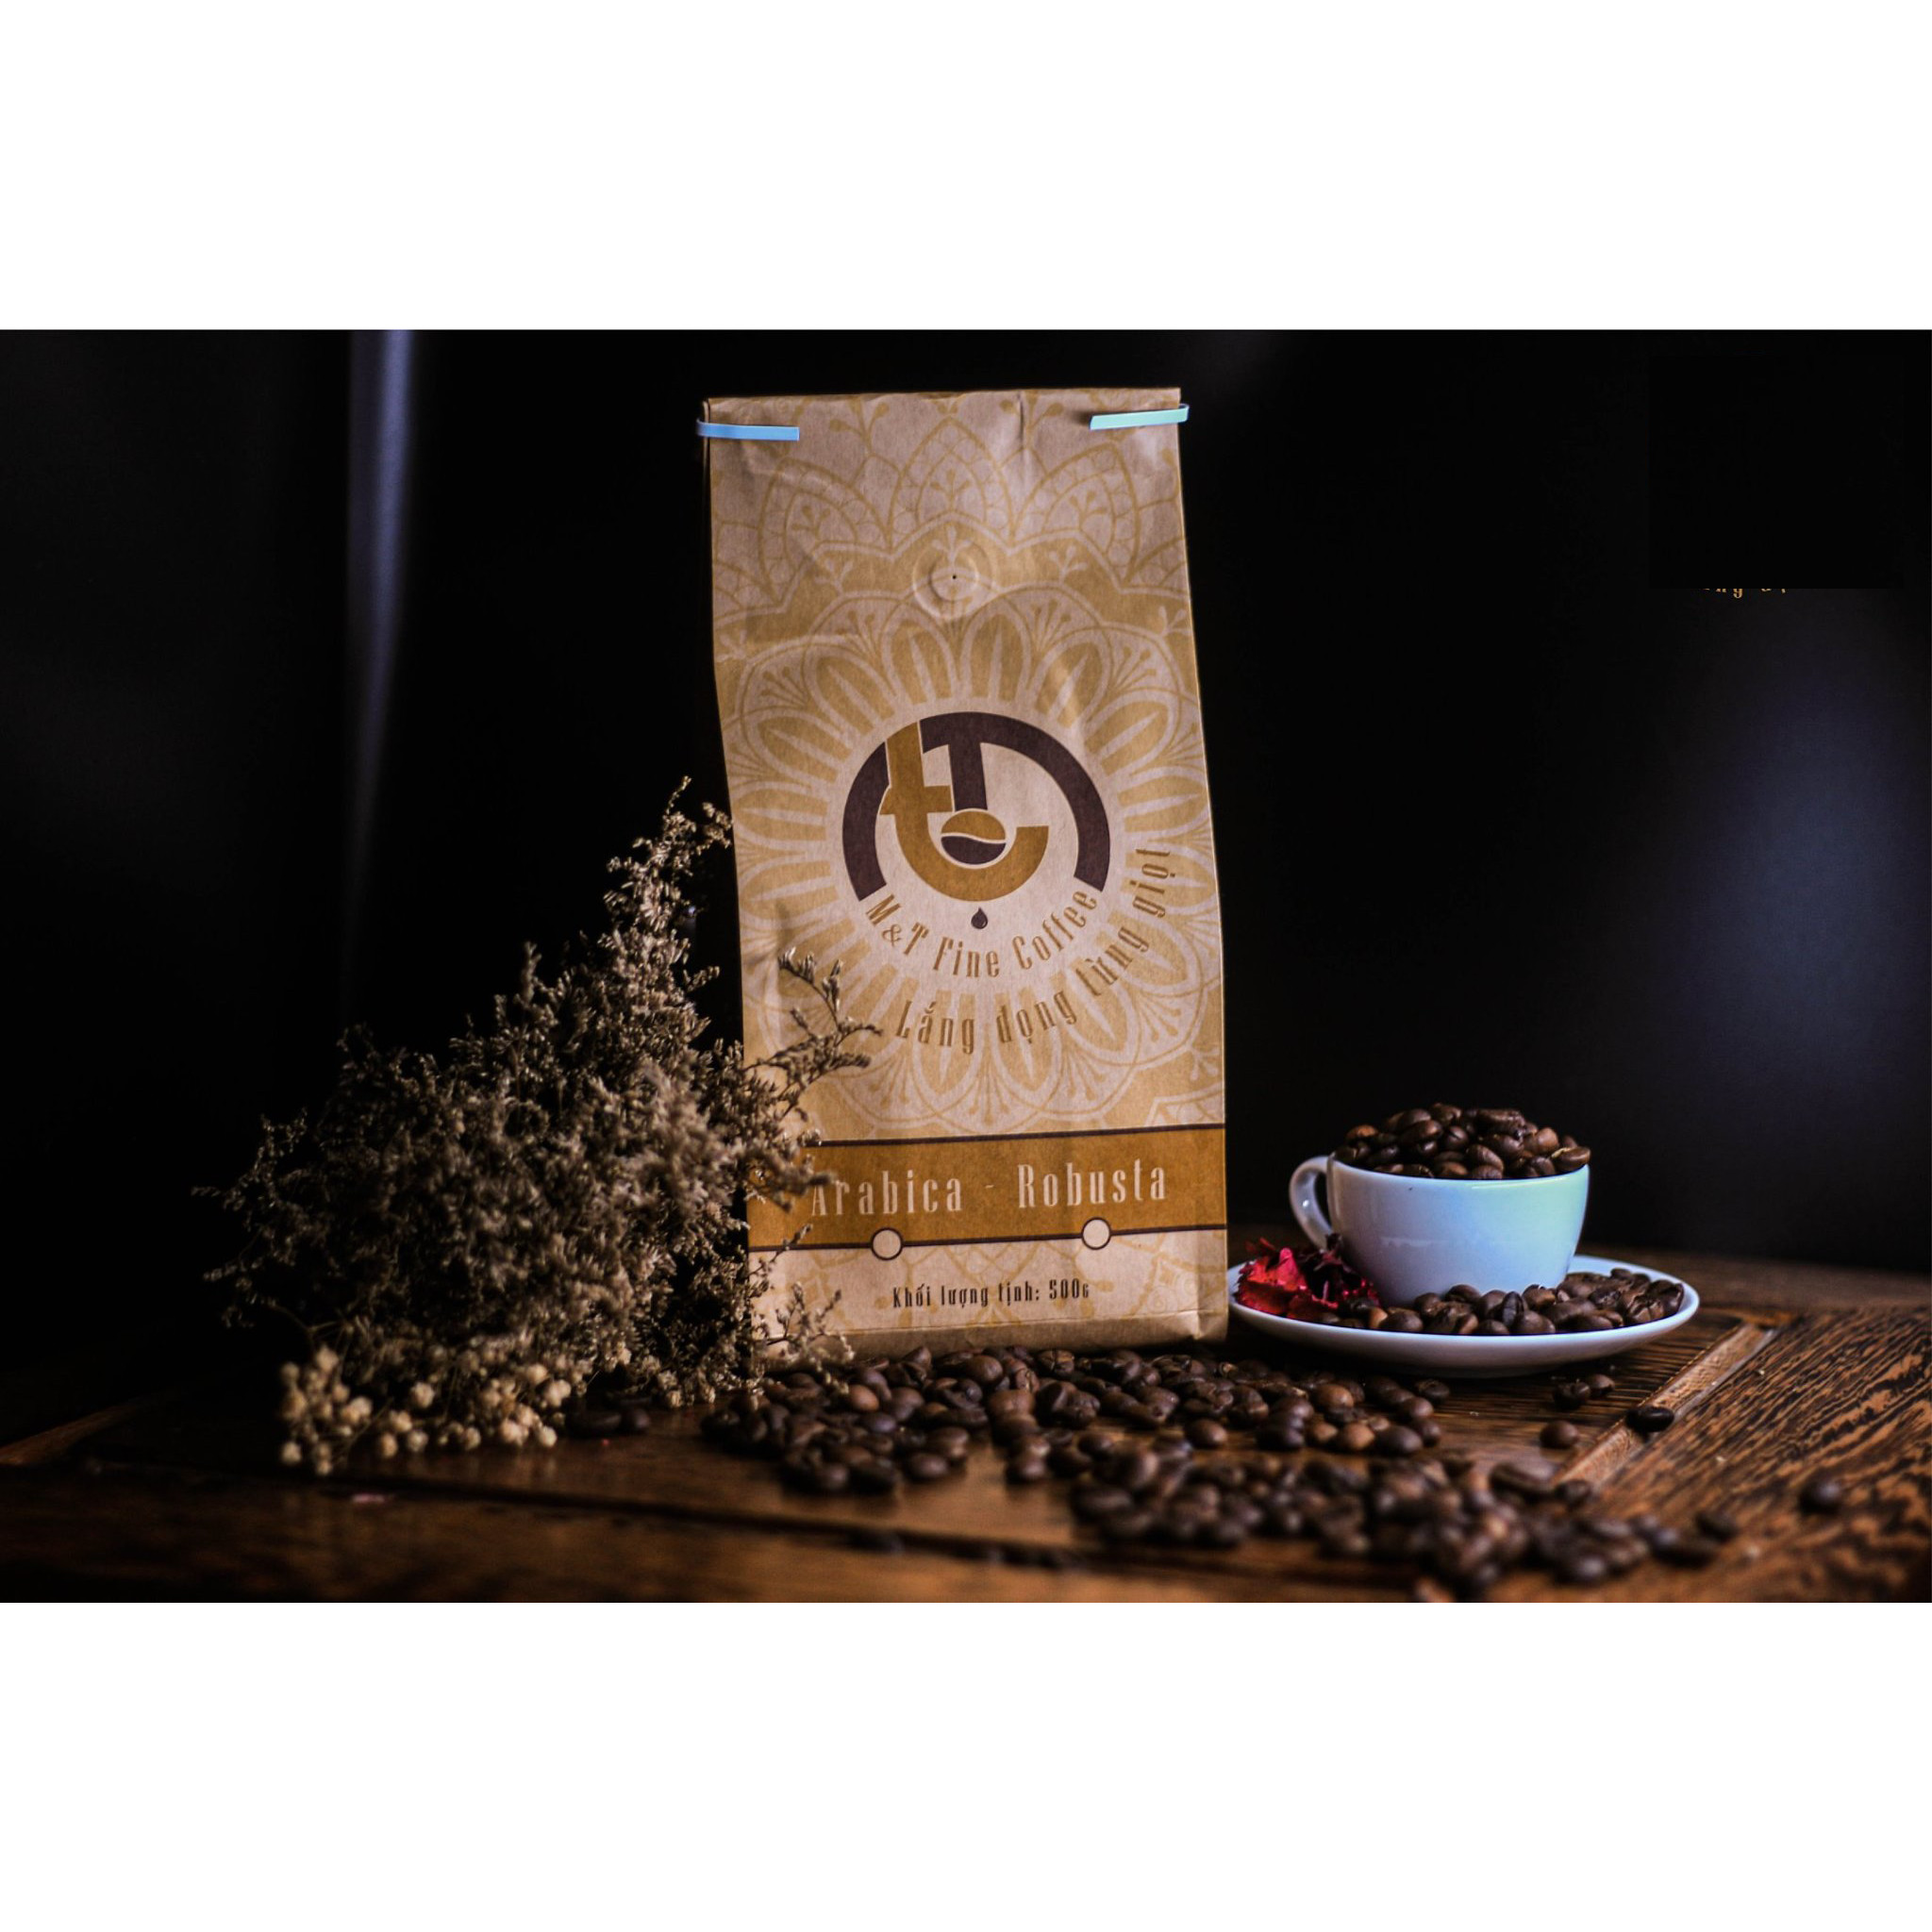 BỘT CÀ PHÊ RANG XAY NGUYÊN CHẤT - RANG MỘC ROBUSTA - M&amp;T FINE COFFEE